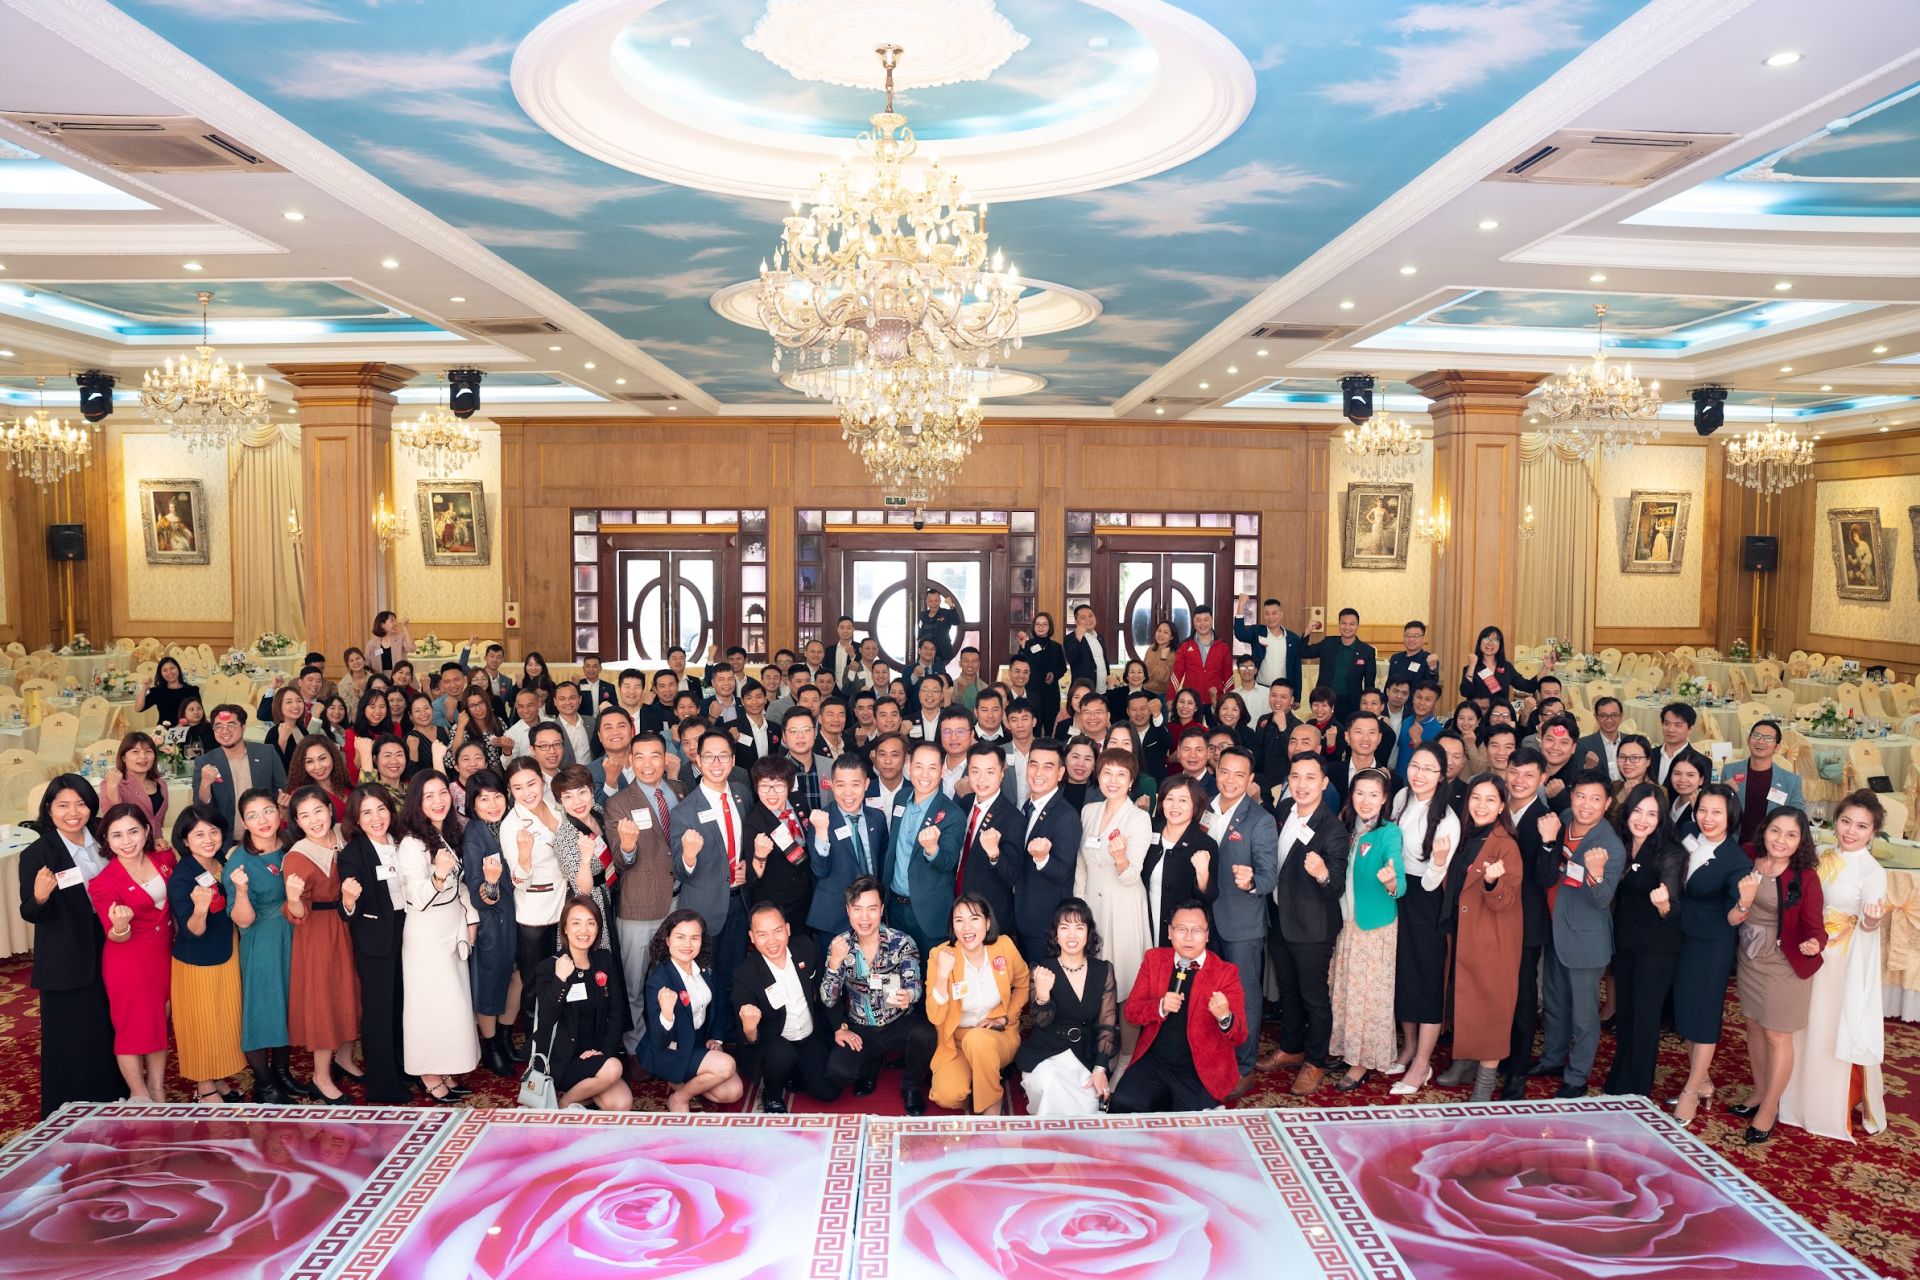 hơn 300 doanh nghiệp đến từ 18 chapter của BNI HQH (BNI vùng Hải Phòng - Quảng Ninh - Hải Dương) đã có dịp gặp gỡ trong chương trình Ngày hội kết nối kinh doanh đầu xuân: “Vui xuân mới –Kết nối toàn cầu” được tổ chức tại Hải Phòng